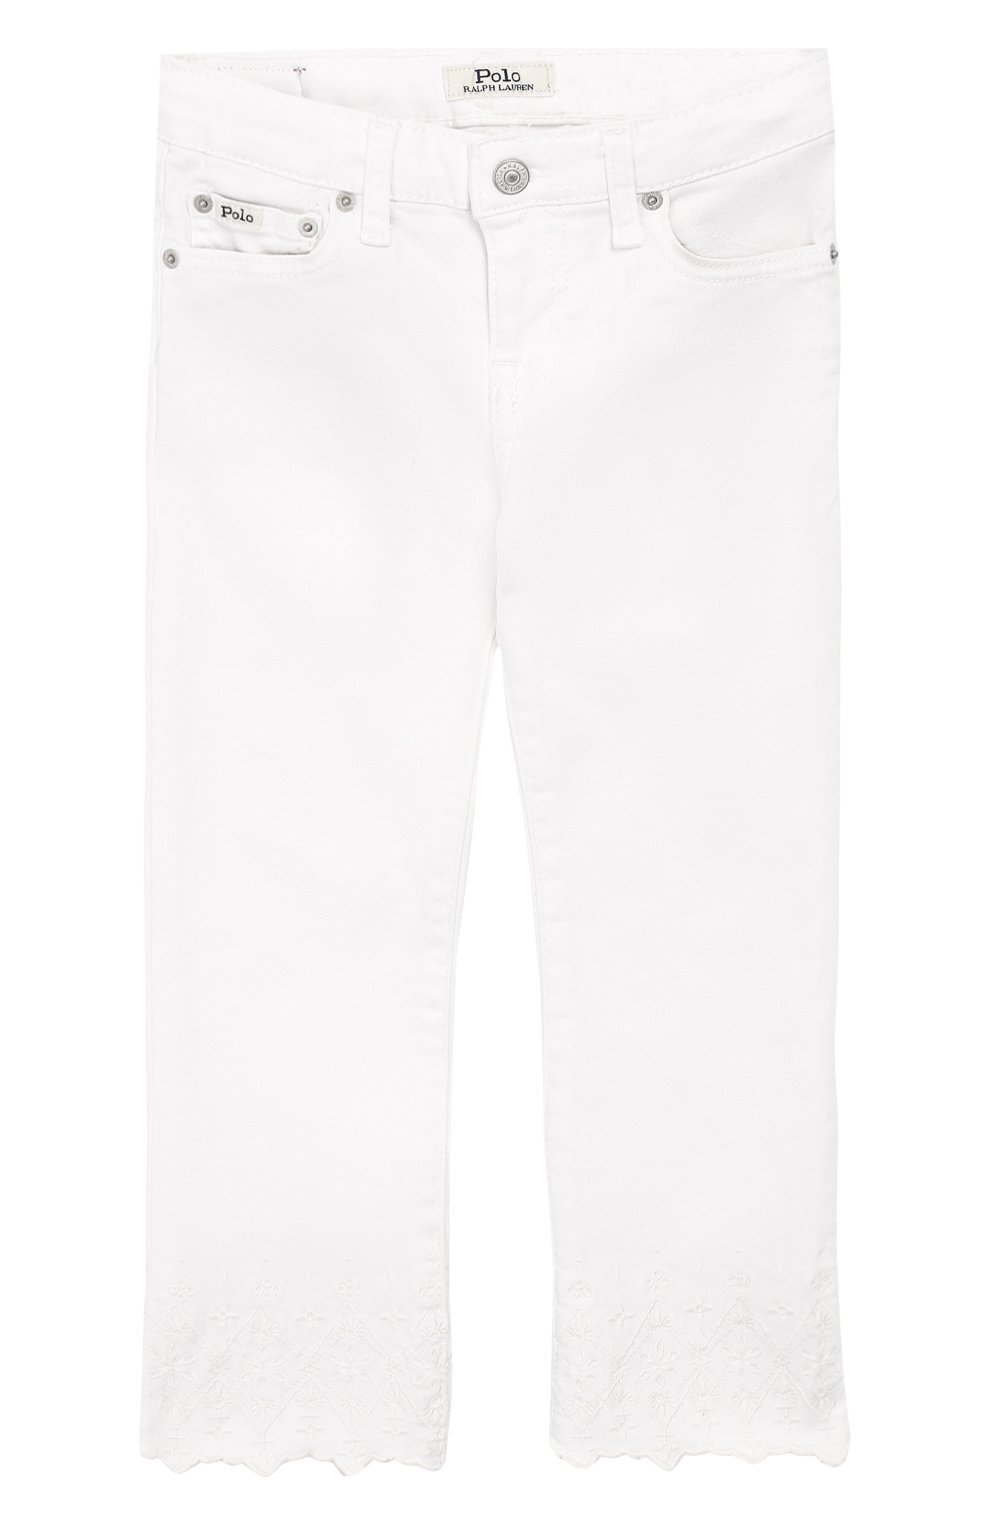 Джинсы Polo Ralph Lauren, Укороченные джинсы с вышивкой Polo Ralph Lauren, Египет, Белый, Хлопок: 98%; Эластан: 2%;, 8278150  - купить